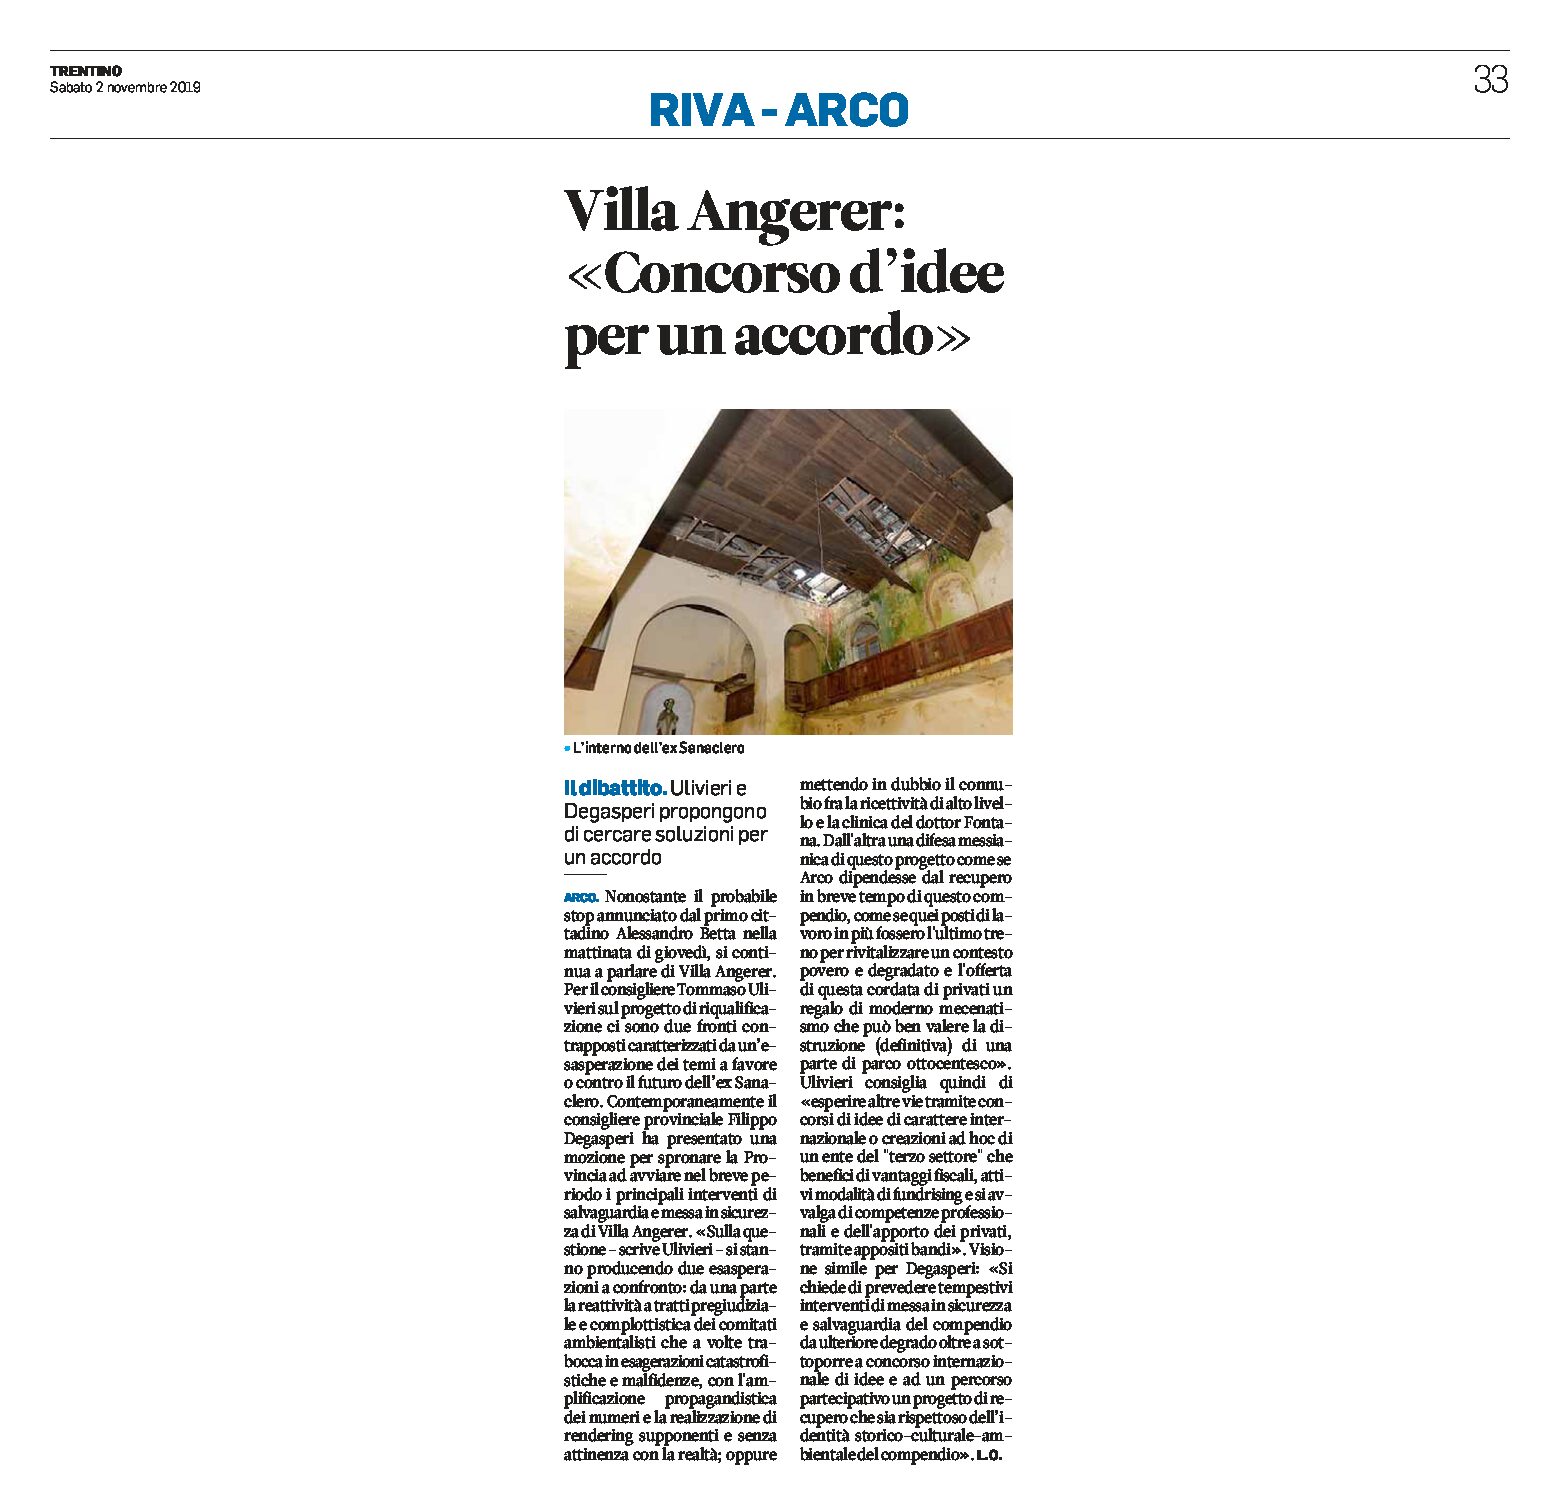 Arco, villa Angerer: Ulivieri e Degasperi propongono un concorso di idee per un accordo